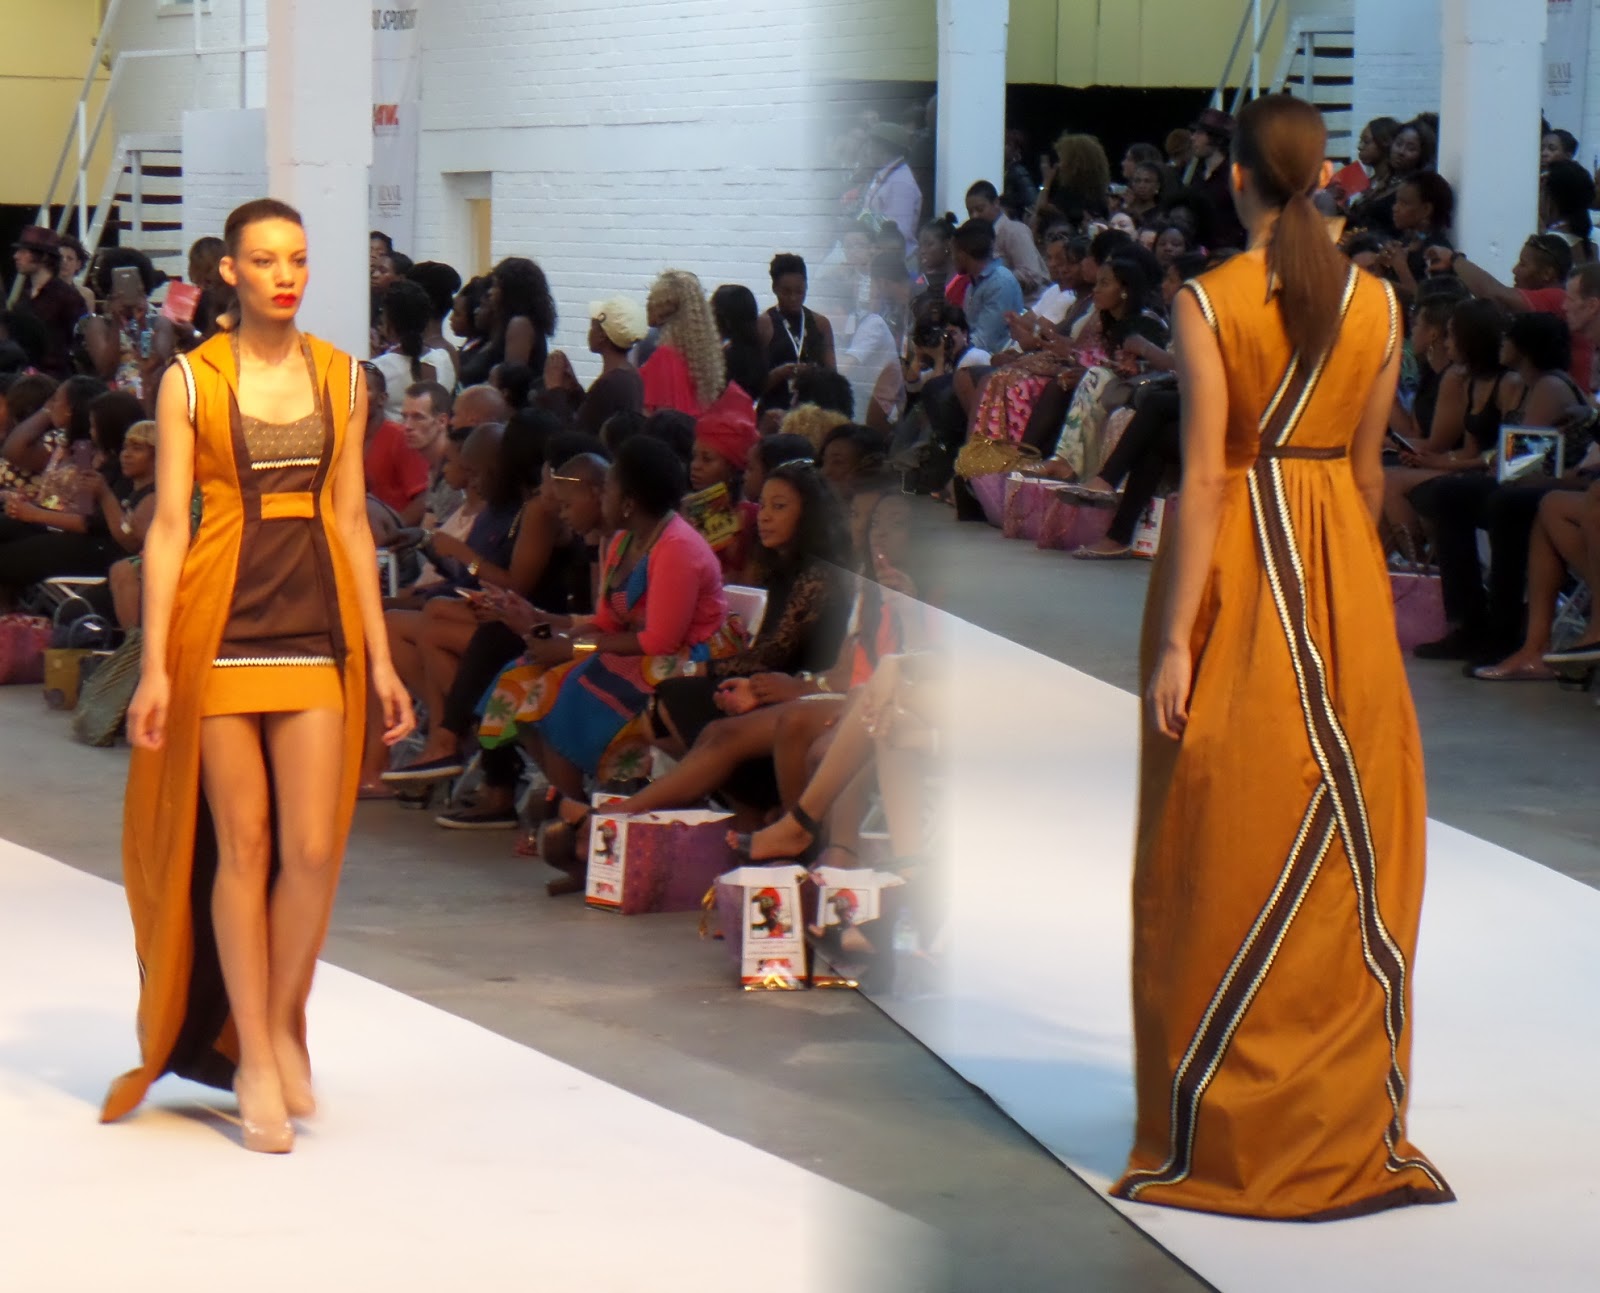 KZN-Based Sluu Fashion Brand Plans Expansion